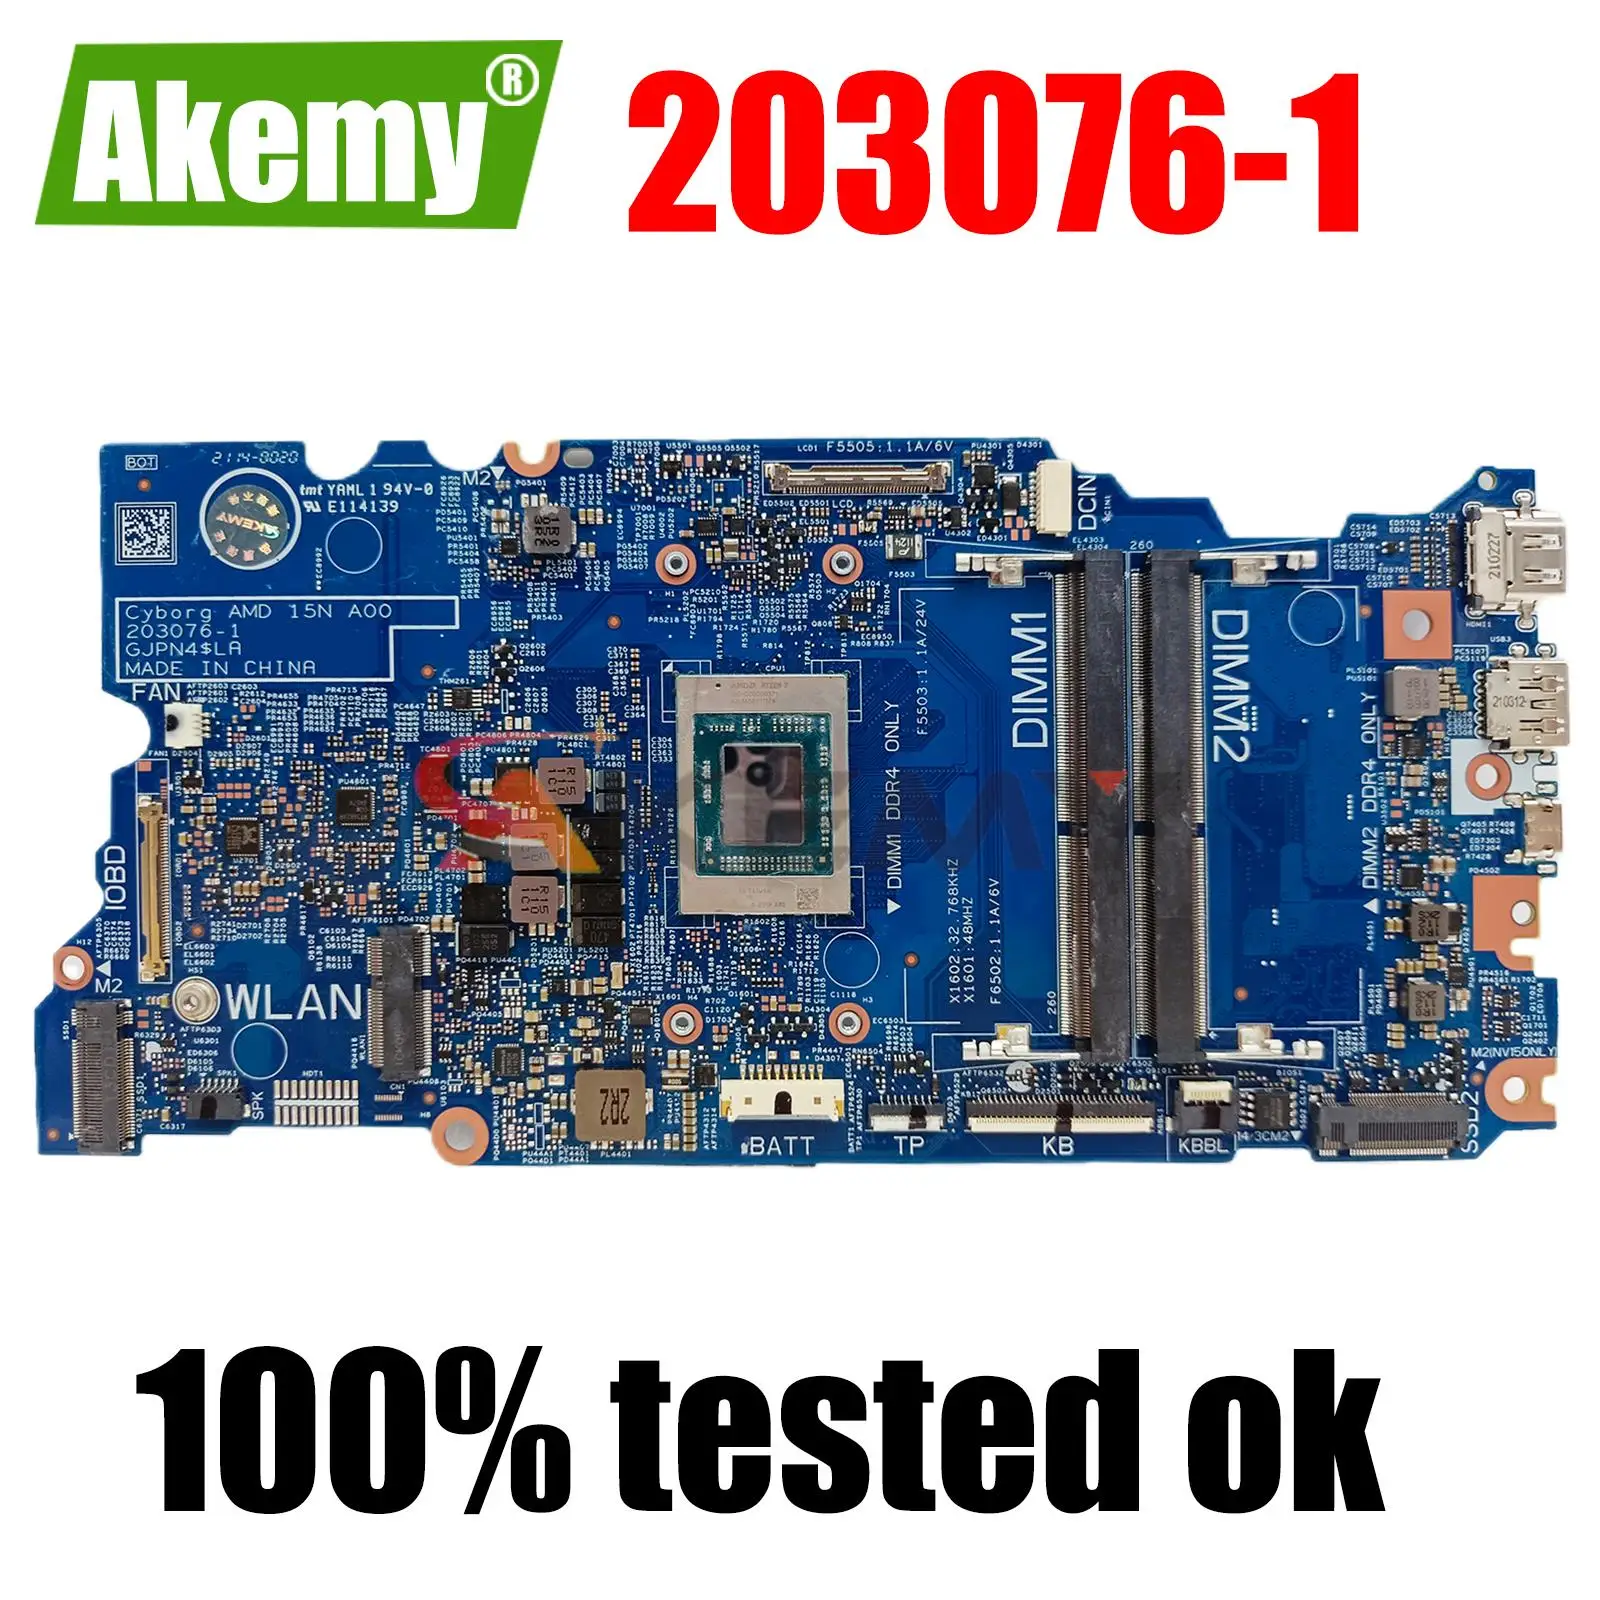 

Original Laptop motherboard For DELL 5515 Celeron R7 CPU Mainboard CN-0KDKG8 0KDKG8 203076-1 100% tested ok